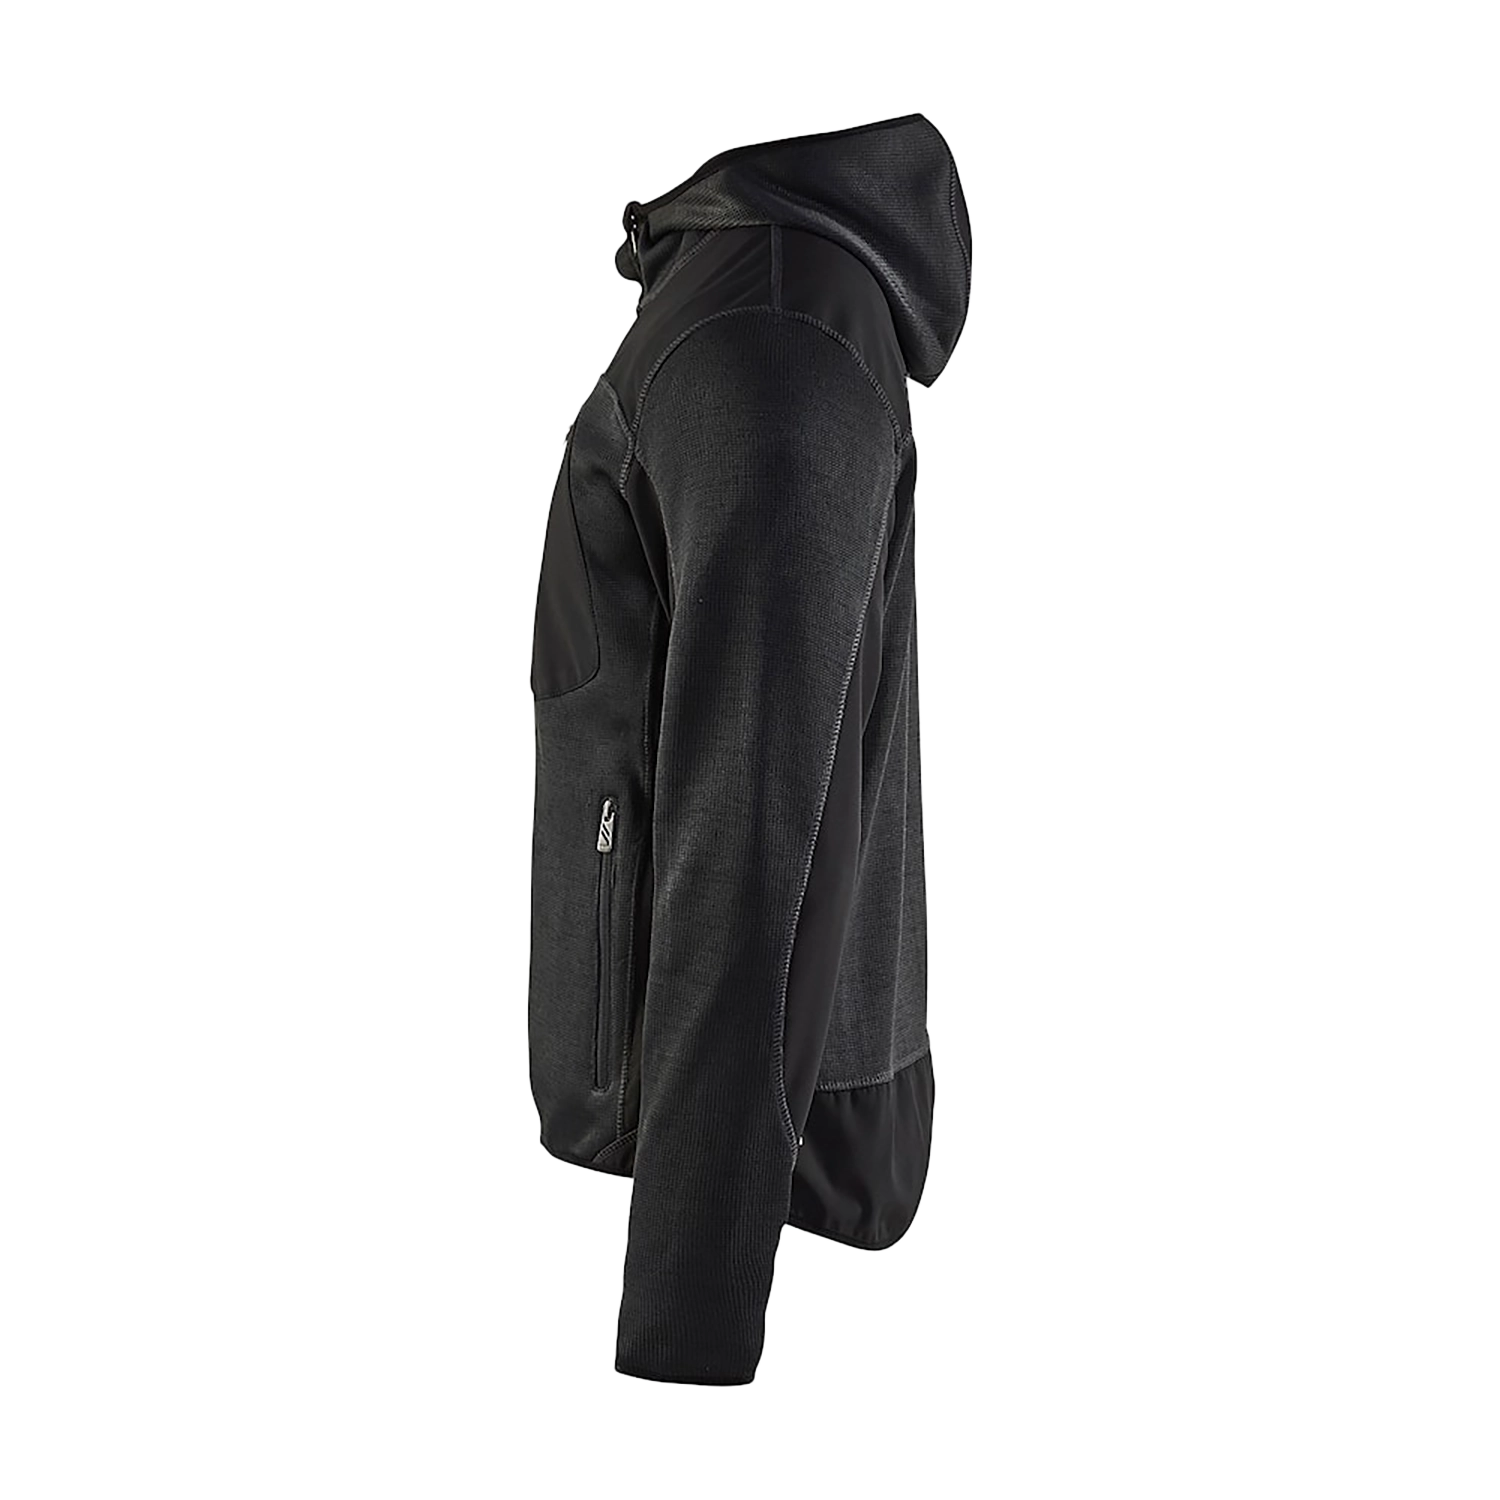 Gilet tricoté avec softshell 4930/2117/9799 - gris foncé/noir - xl